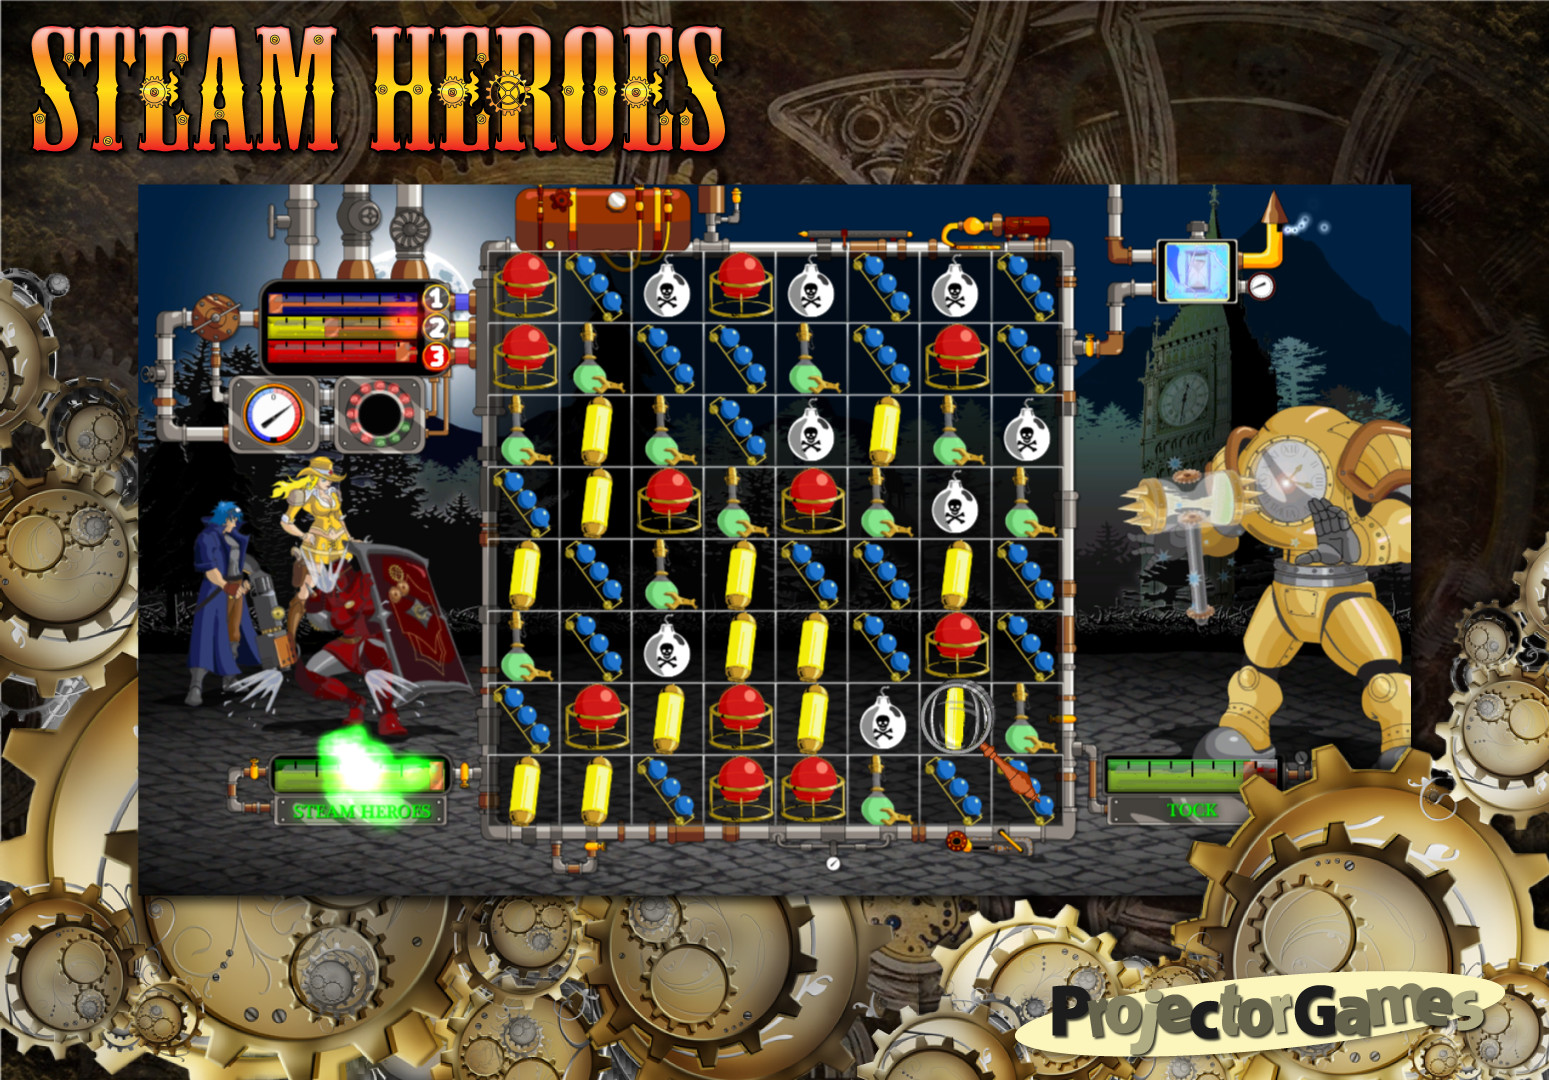 heroes 6 steam download